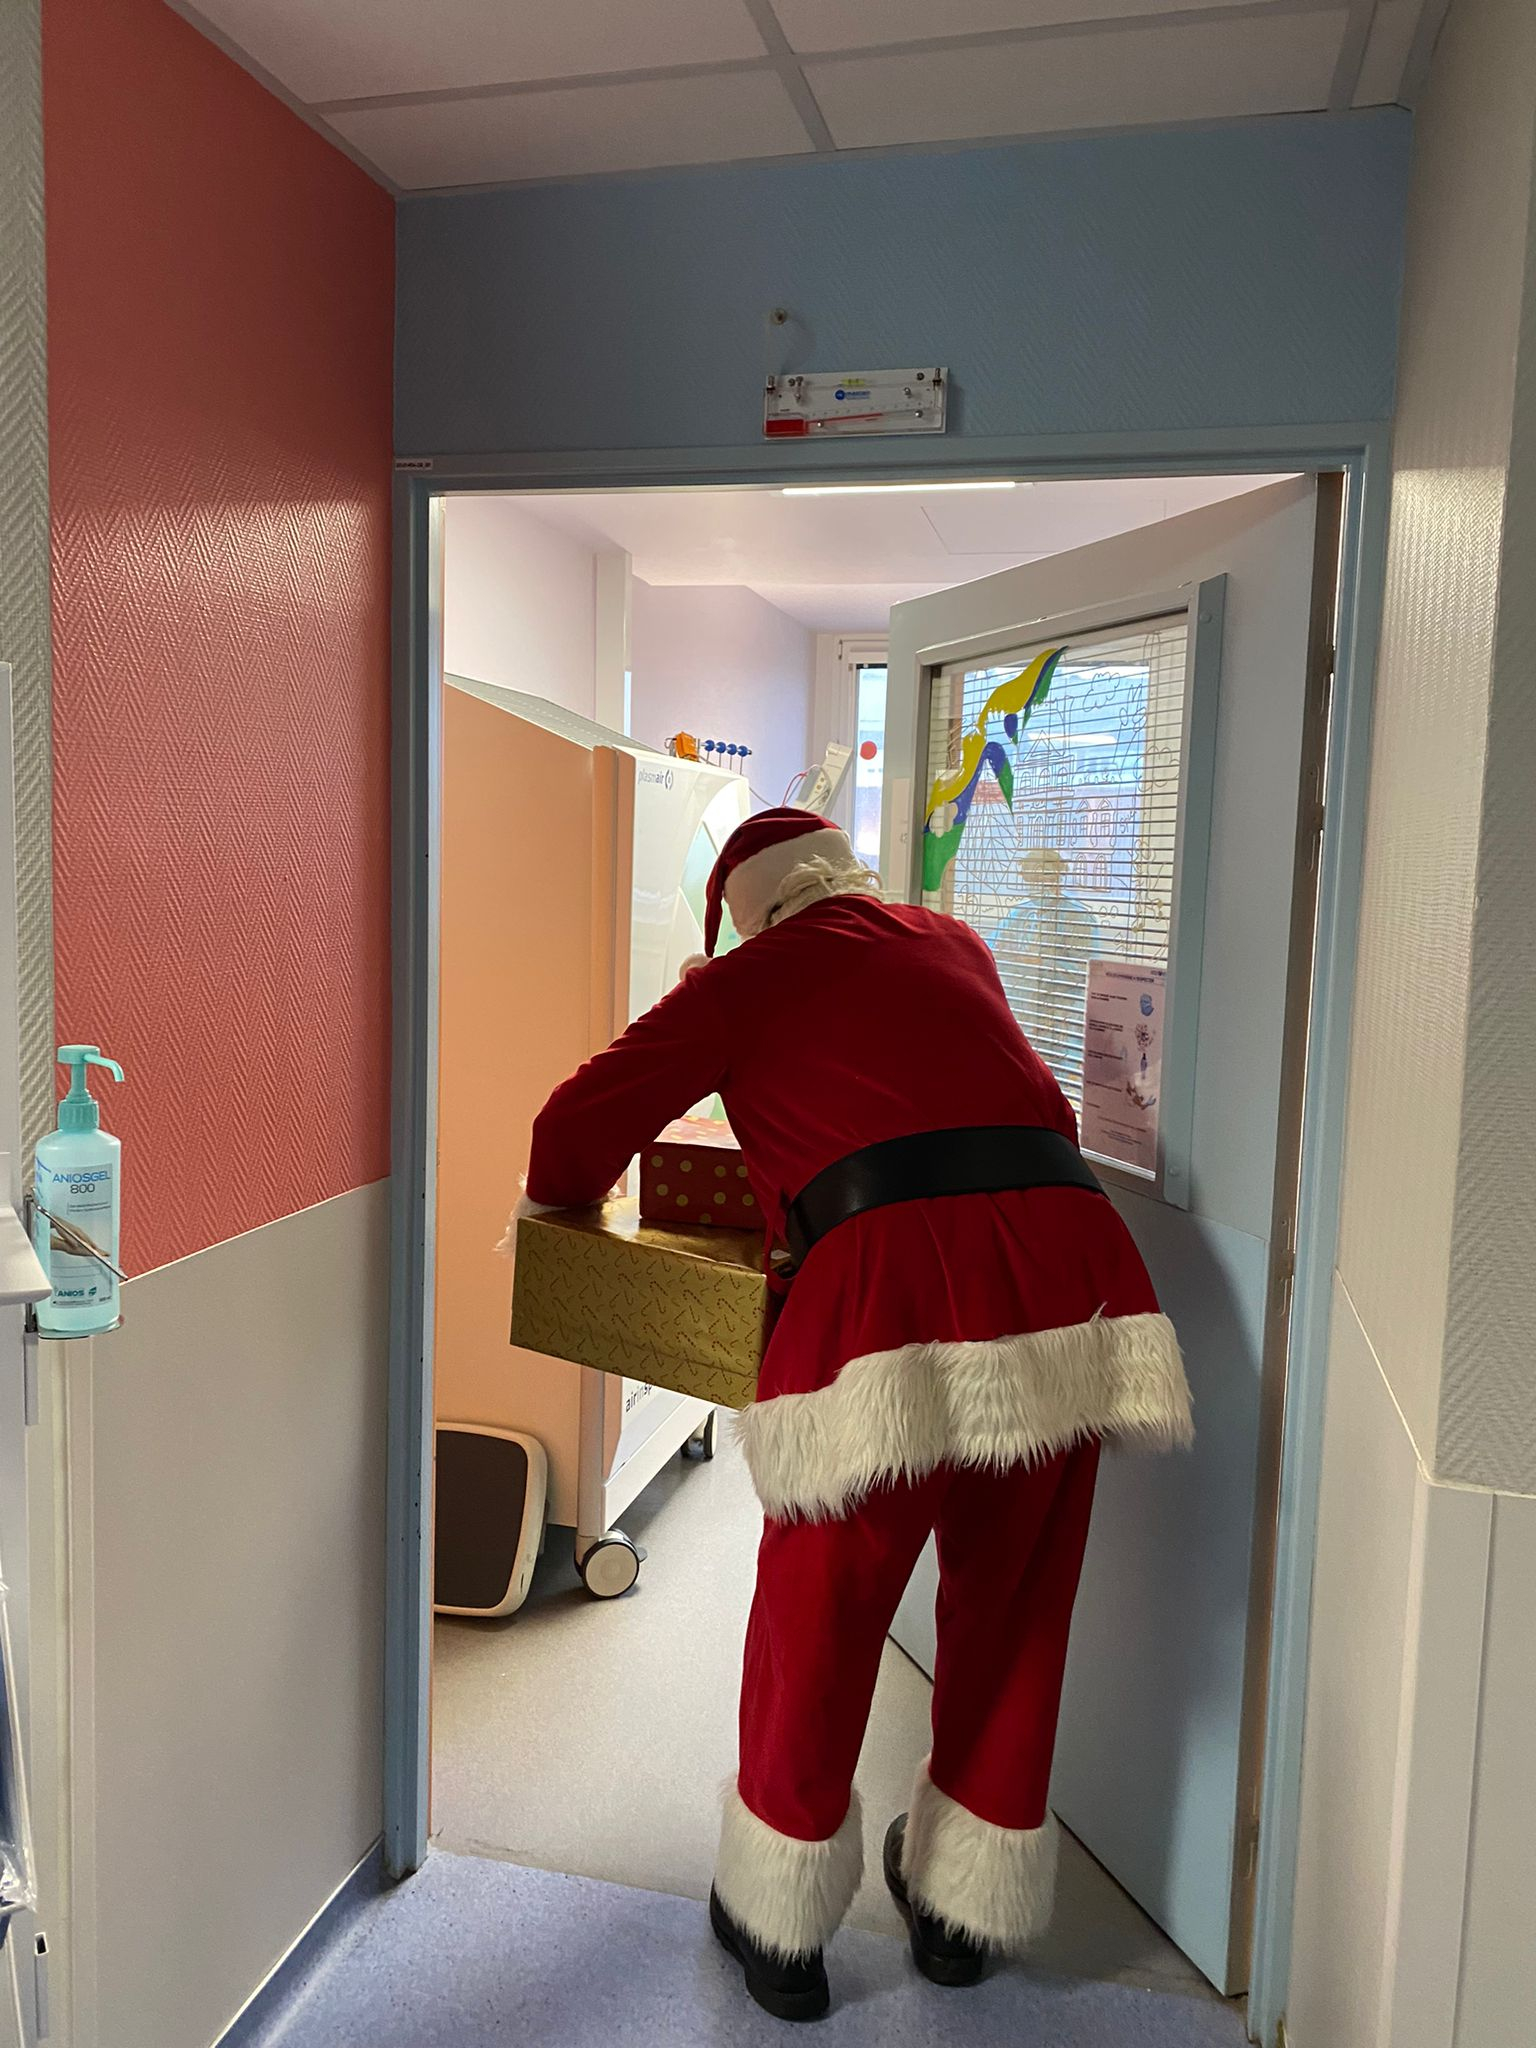 Le père Noël entrant dans une chambre d'enfant à l'hôpital Necker